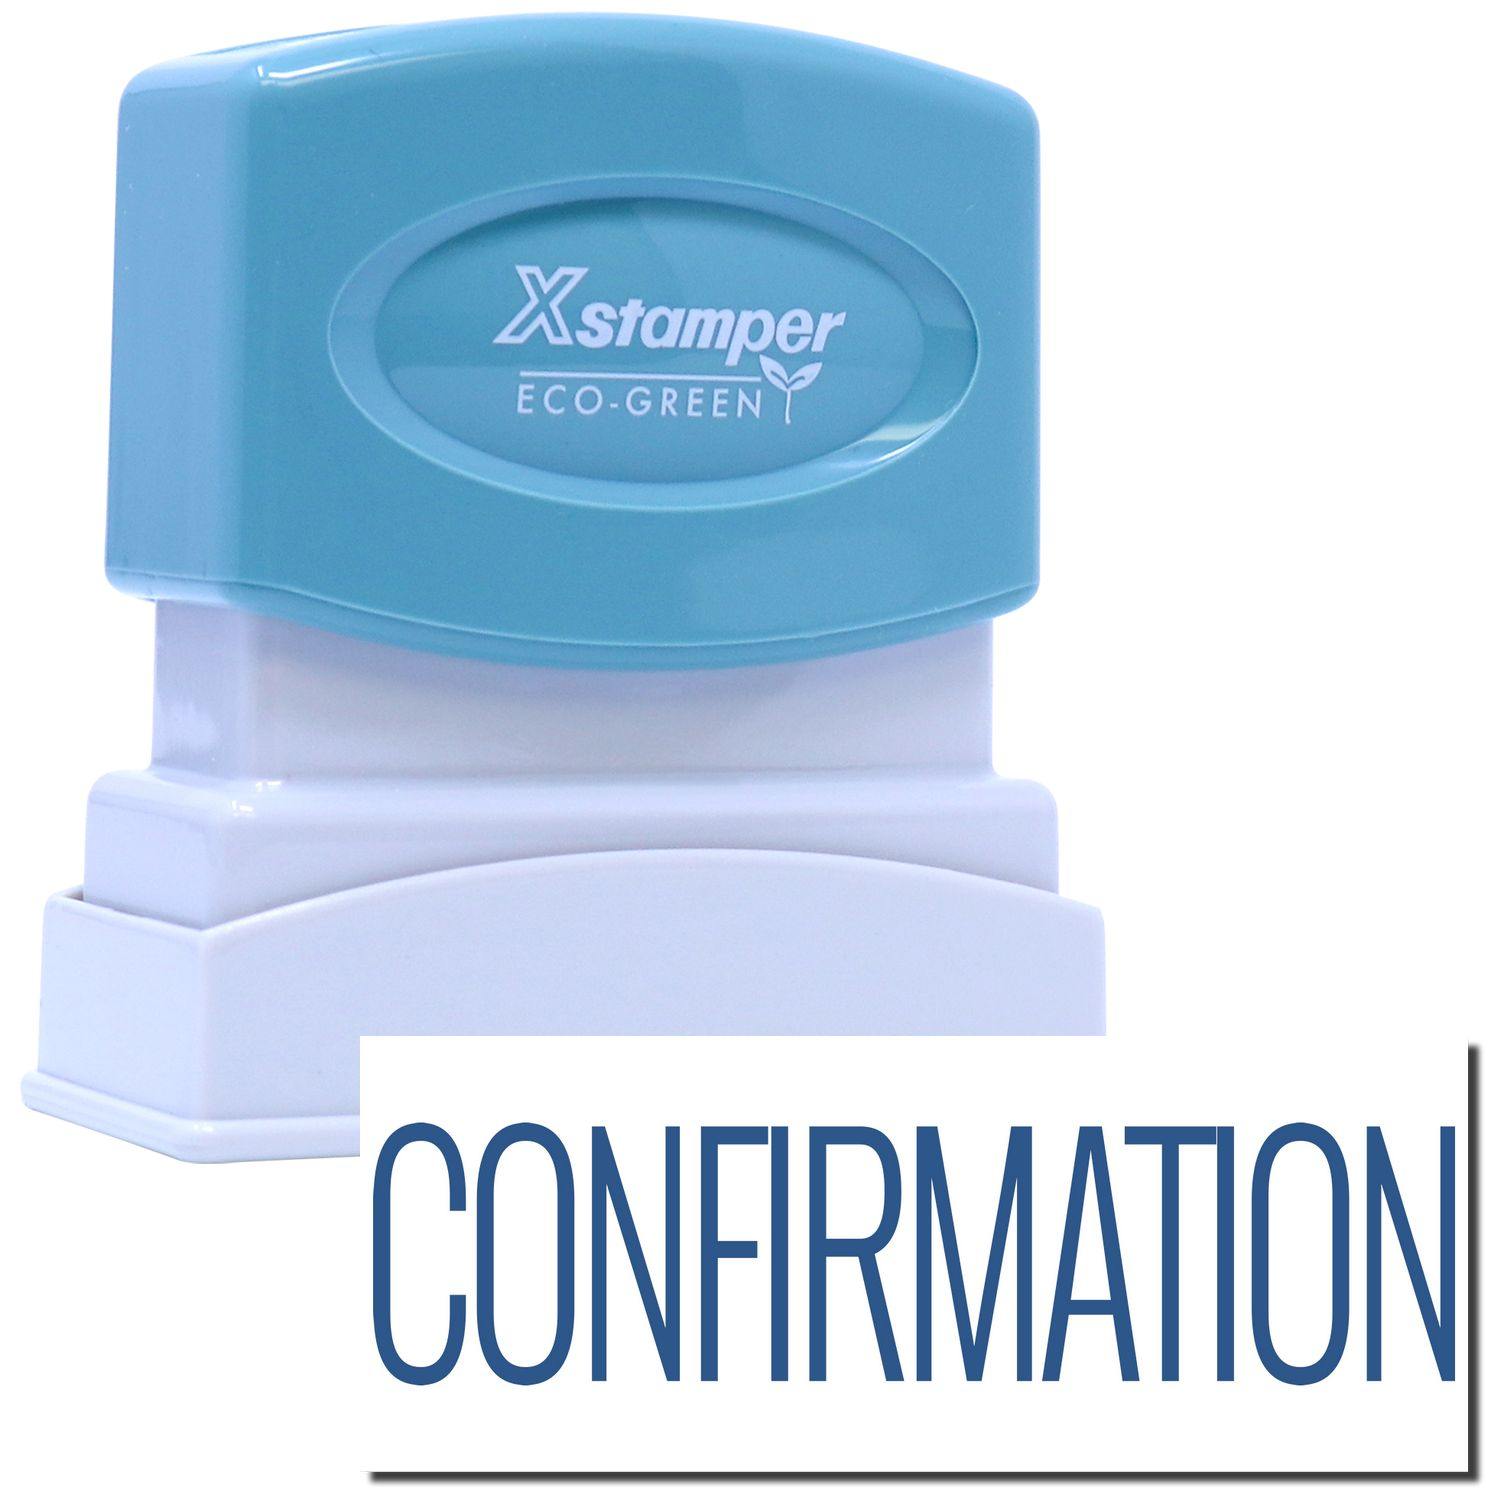 Confirmation Xstamper Stamp Main Image